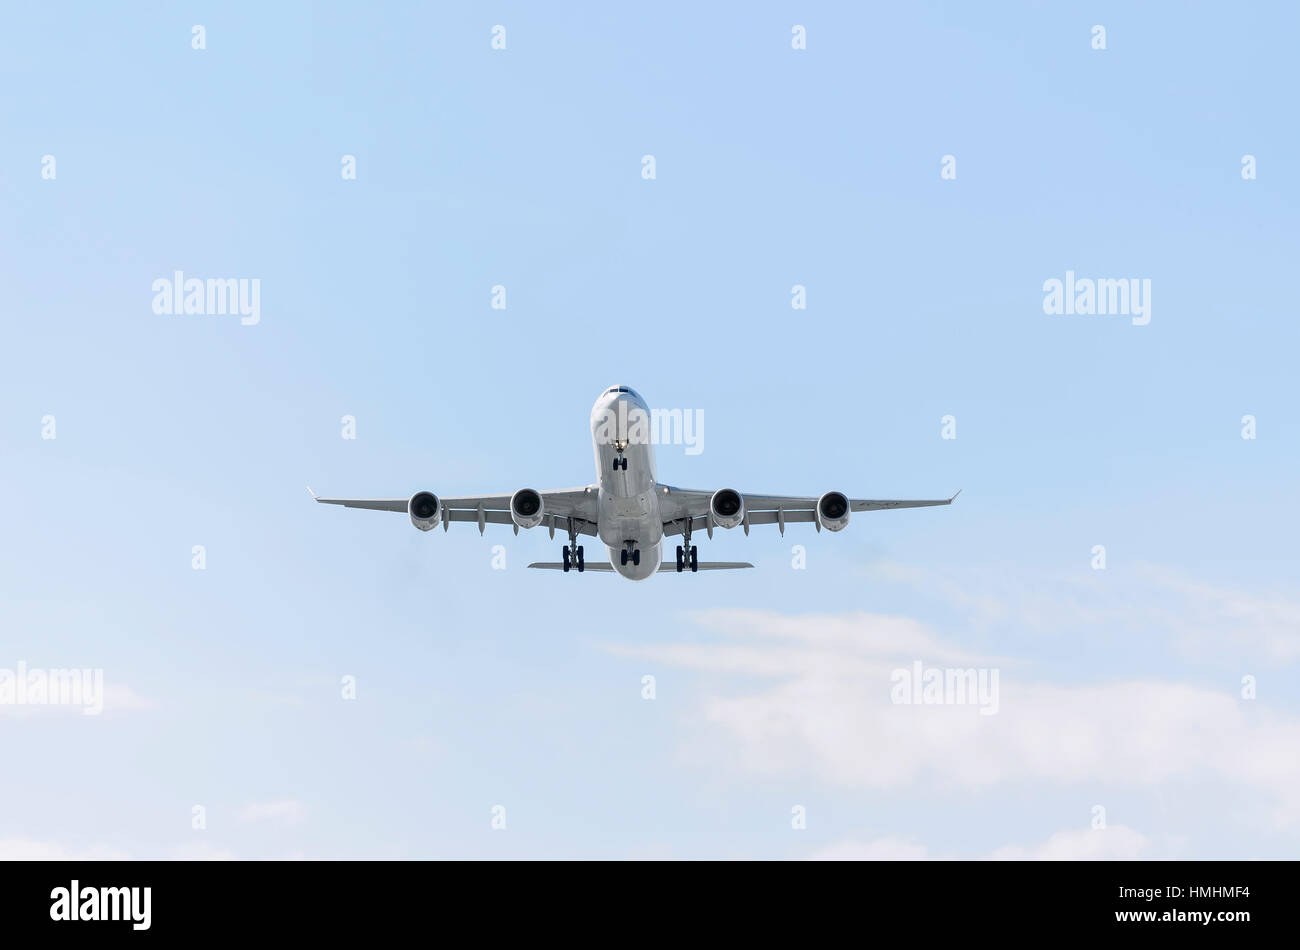 Avion Airbus A340 d'Iberia, compagnie aérienne. Ciel bleu avec quelques nuages. Banque D'Images